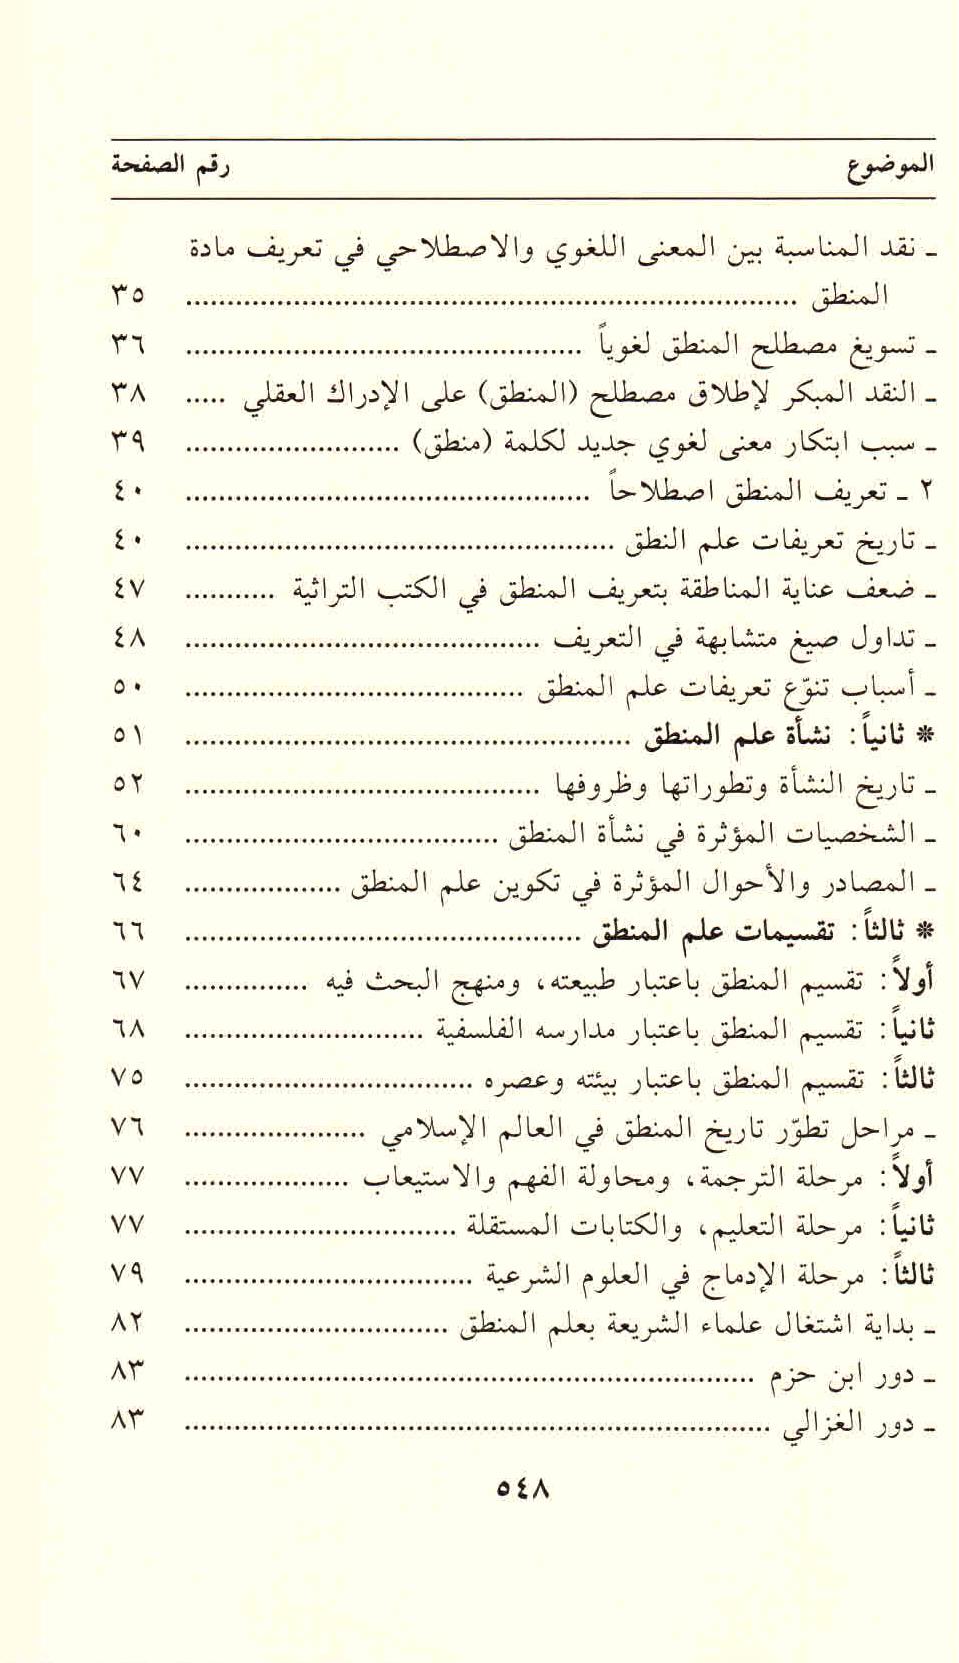 ص 548 محتويات كتاب علاقة علم أصول الفقه بعلم المنطق